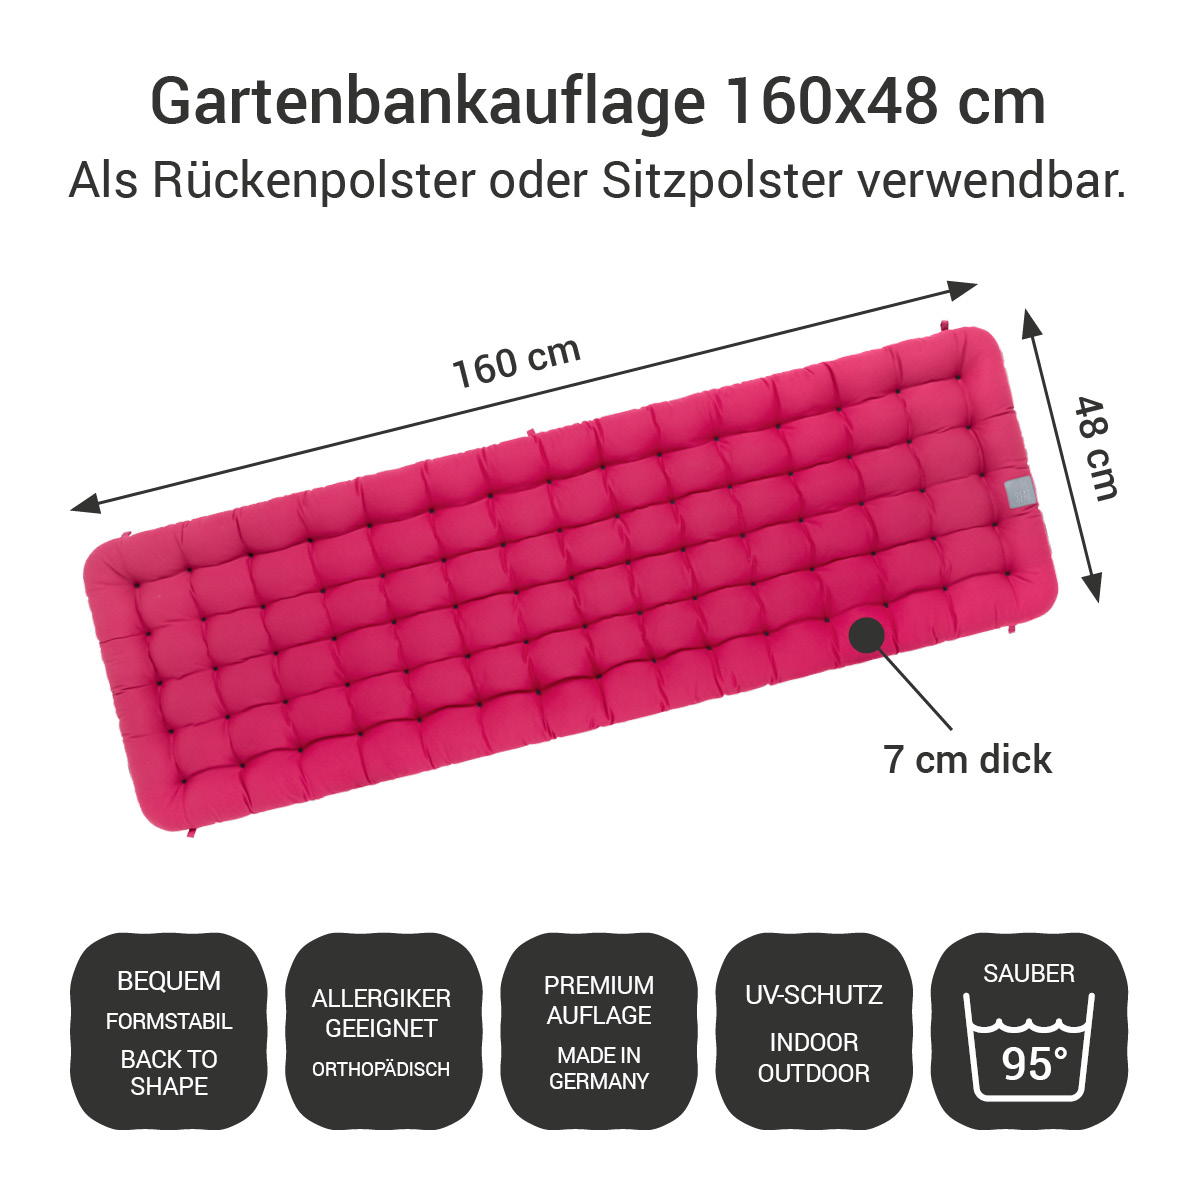 Gartenbankauflage hot pink | 160x48 cm / 160 x 50 cm | bequem & orthopädisch, komplett im Ganzen waschbar bis 95°C, wetterfest, Made in Germany